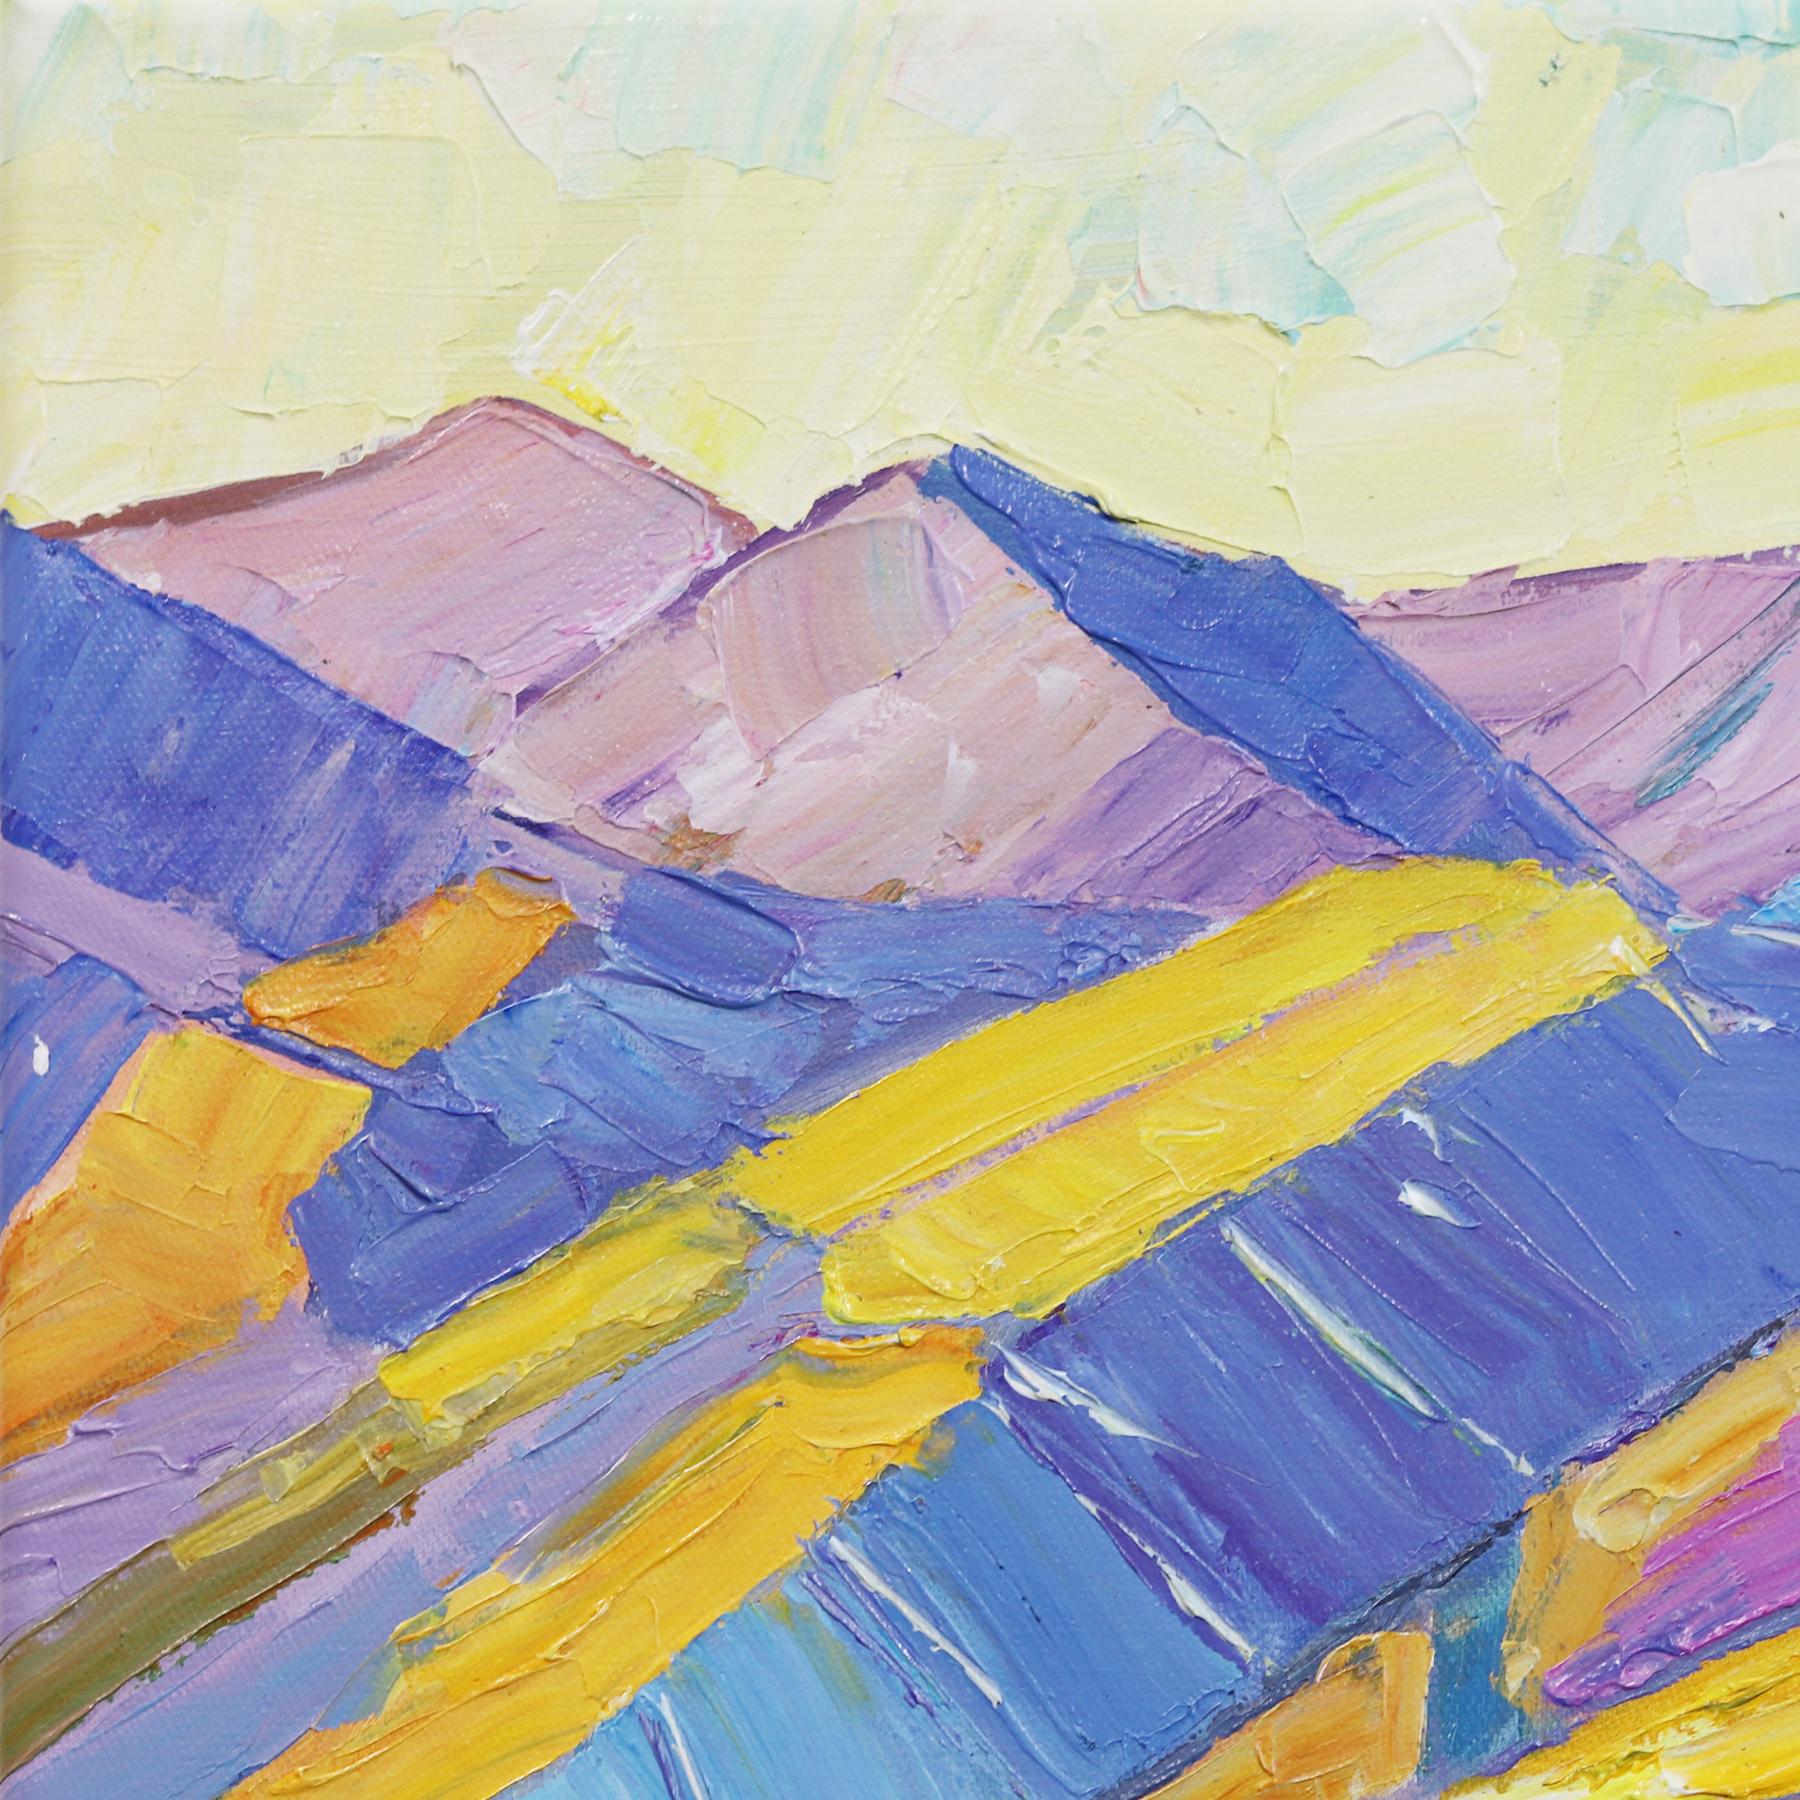 Sommer und das Leben ist einfach – Impressionistisches Landschaftsgemälde, Bergmalerei (Post-Impressionismus), Painting, von Katharina Husslein